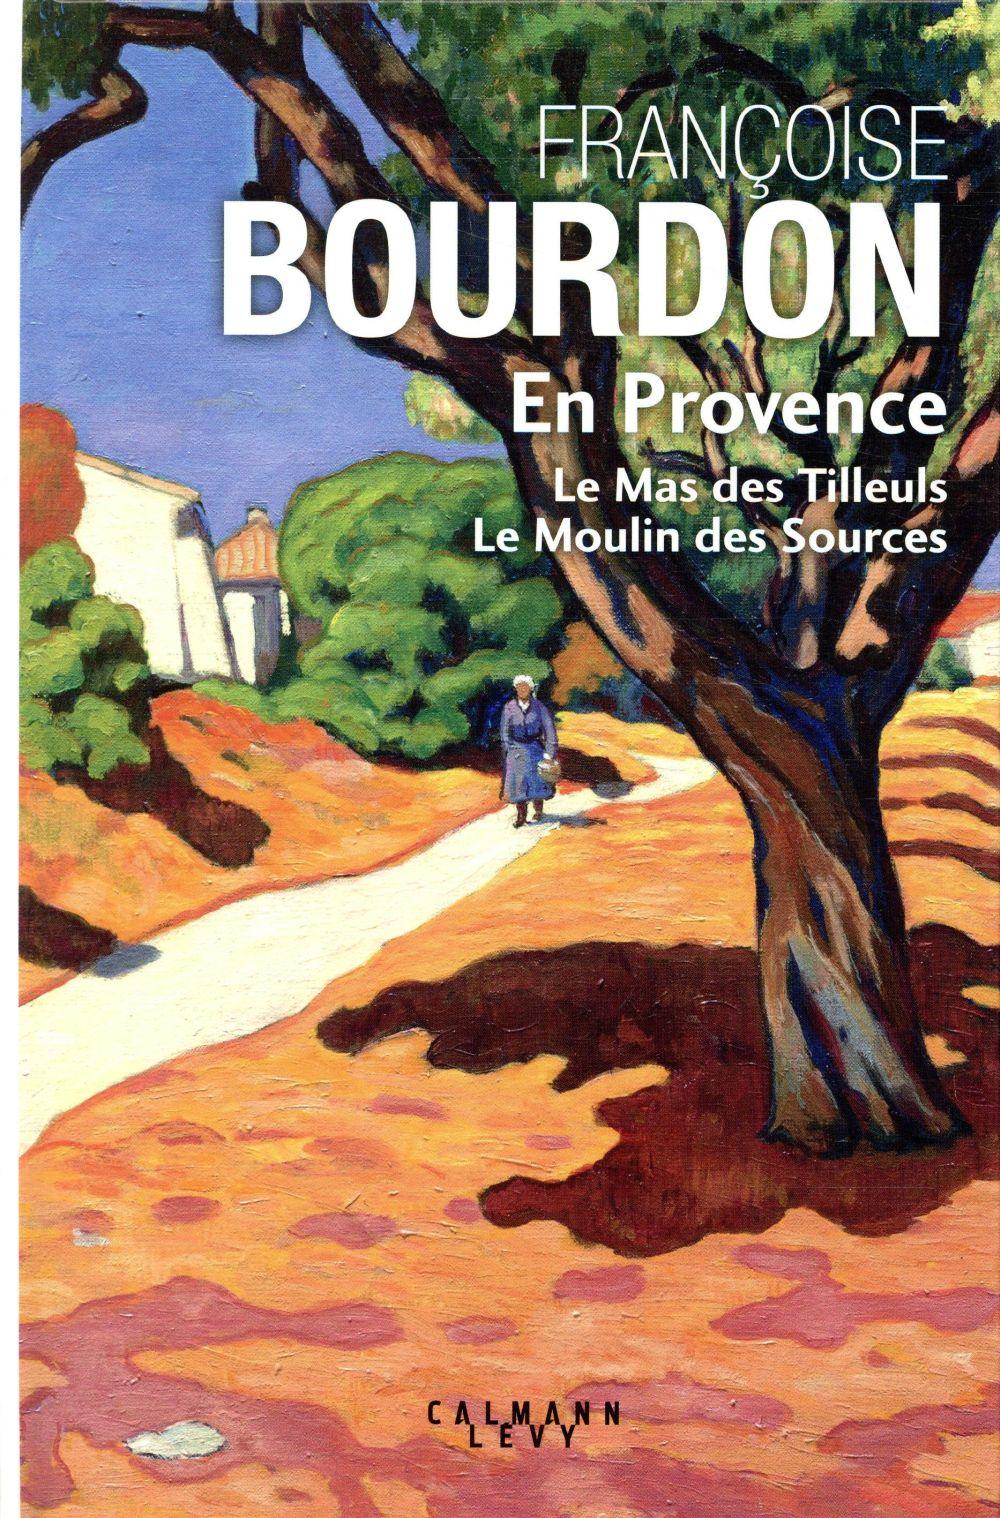 Vente                                 En Provence
                                 - Françoise BOURDON                                 